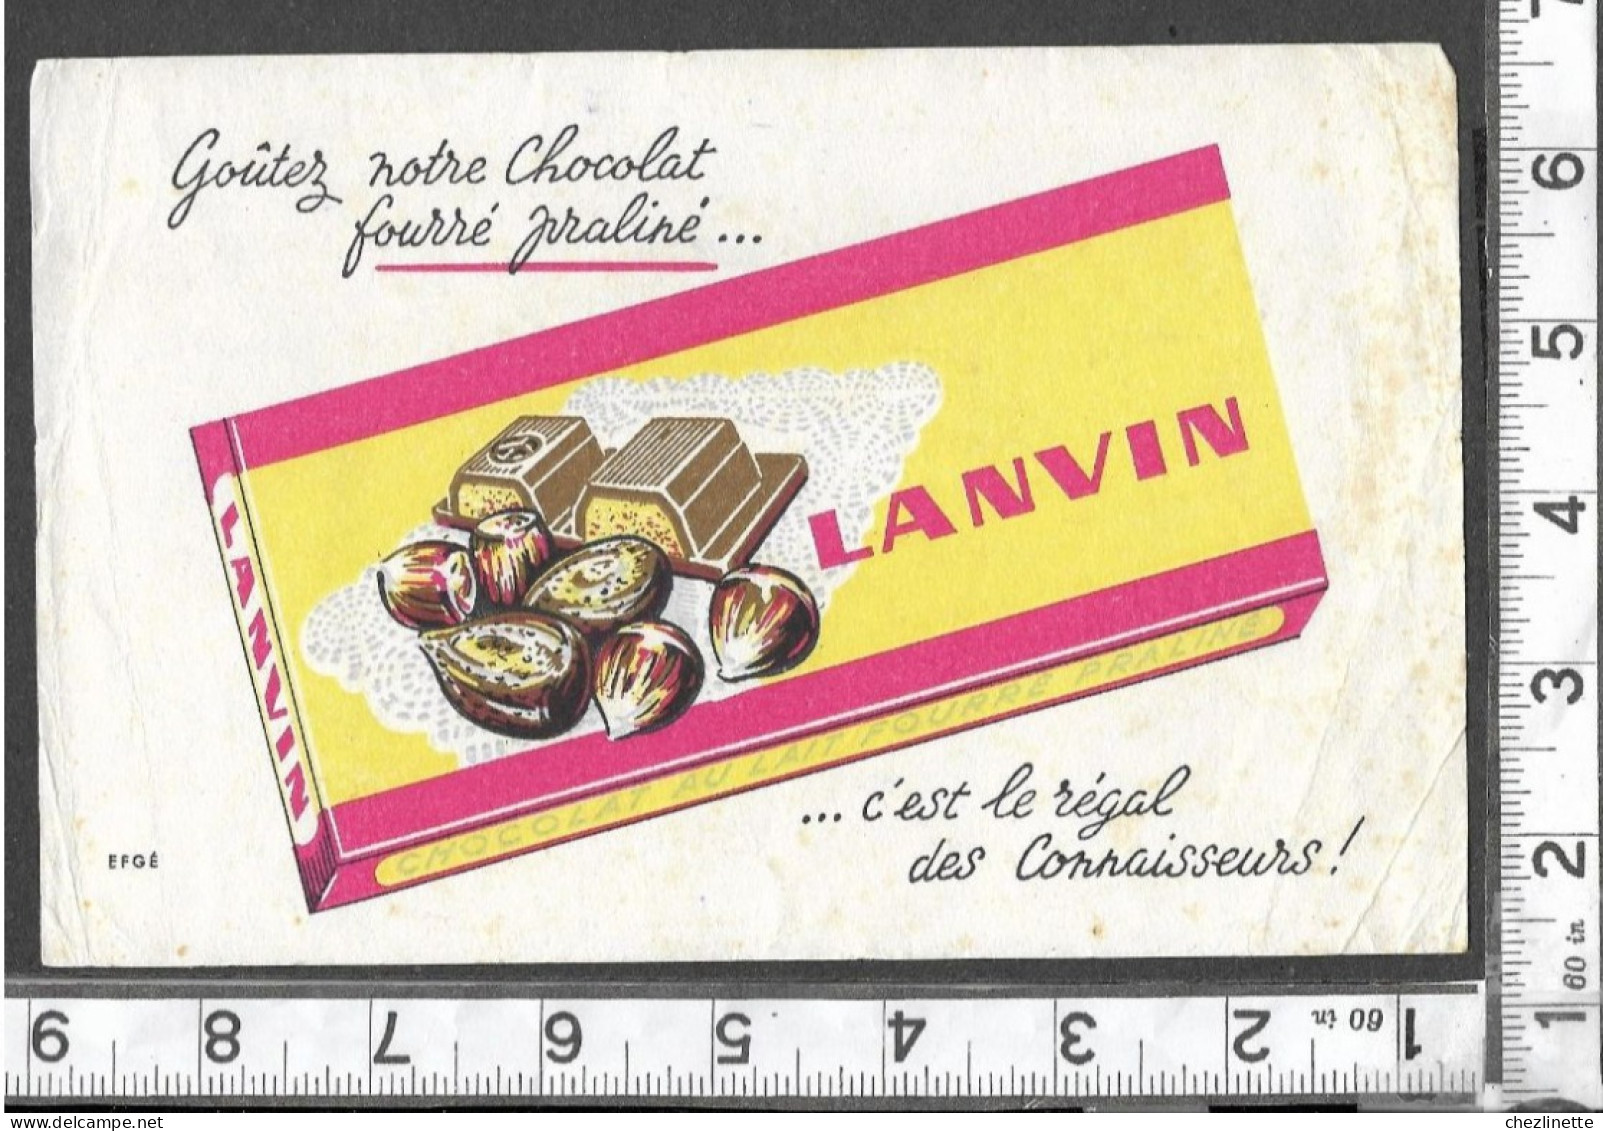 BUVARD ANCIEN PUBLICITAIRE / CHOCOLAT LANVIN / FOURRE PRALINE NOISETTES AMANDES / EFGE  / RV - Cocoa & Chocolat